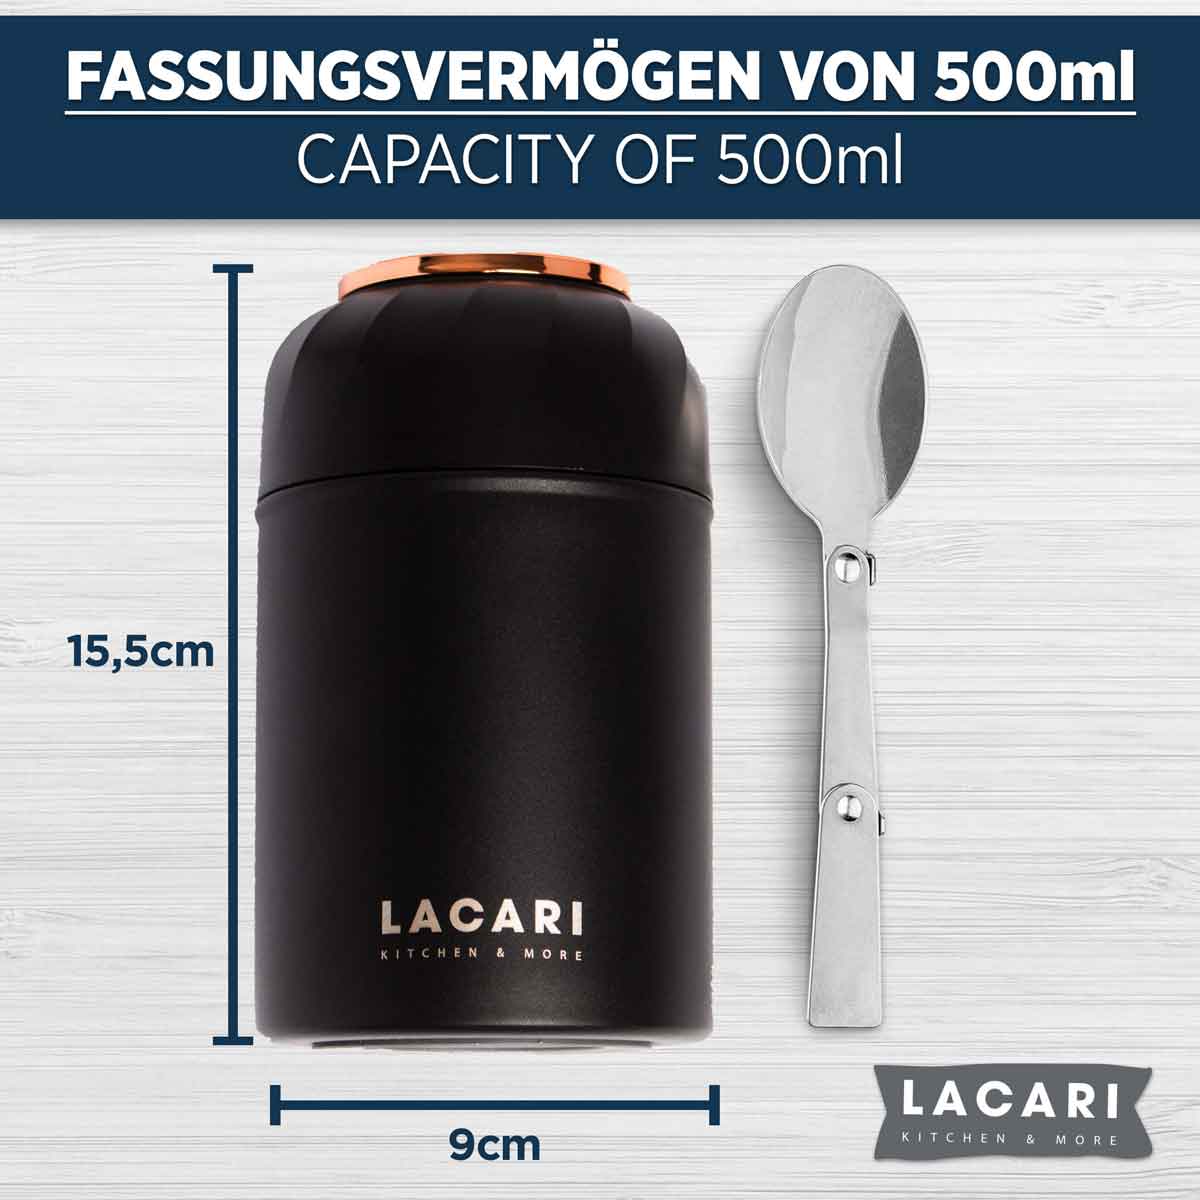 Edelstahl Thermobehälter für Essen - 500ml, Schwarz, Auslaufsicher Thermosflaschen Lacari 